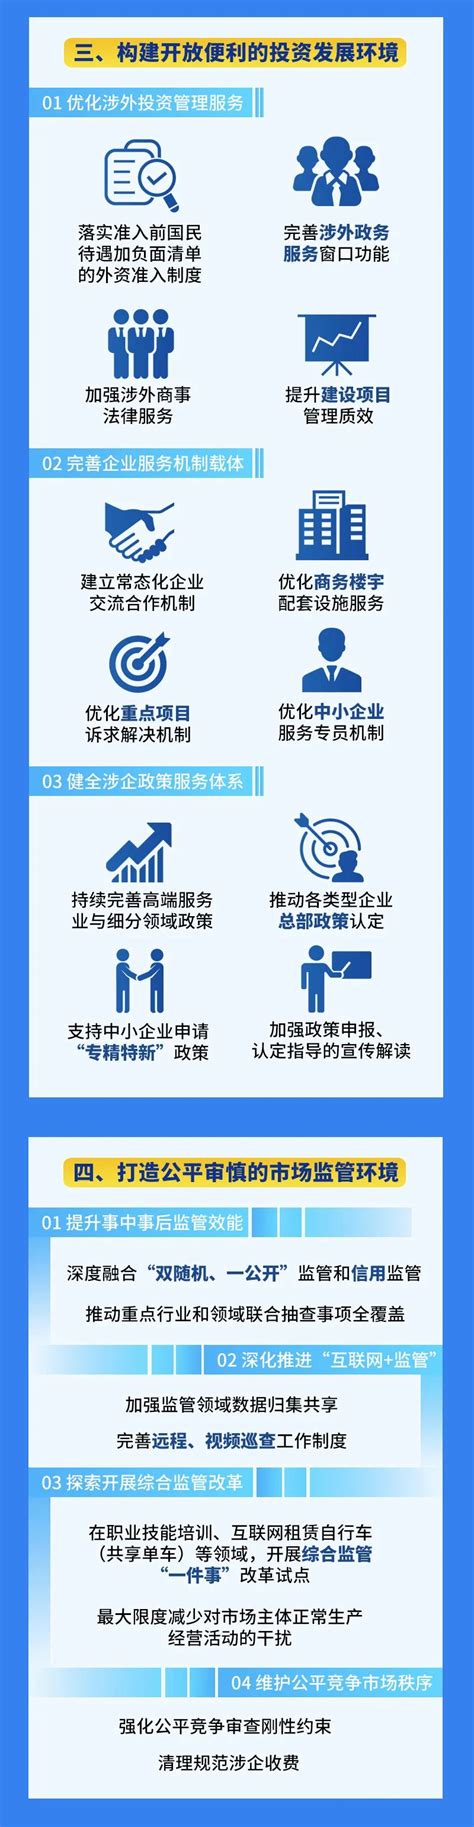 黄浦区发布持续优化营商环境6.0版方案，“宜商黄浦”品牌建设再升级